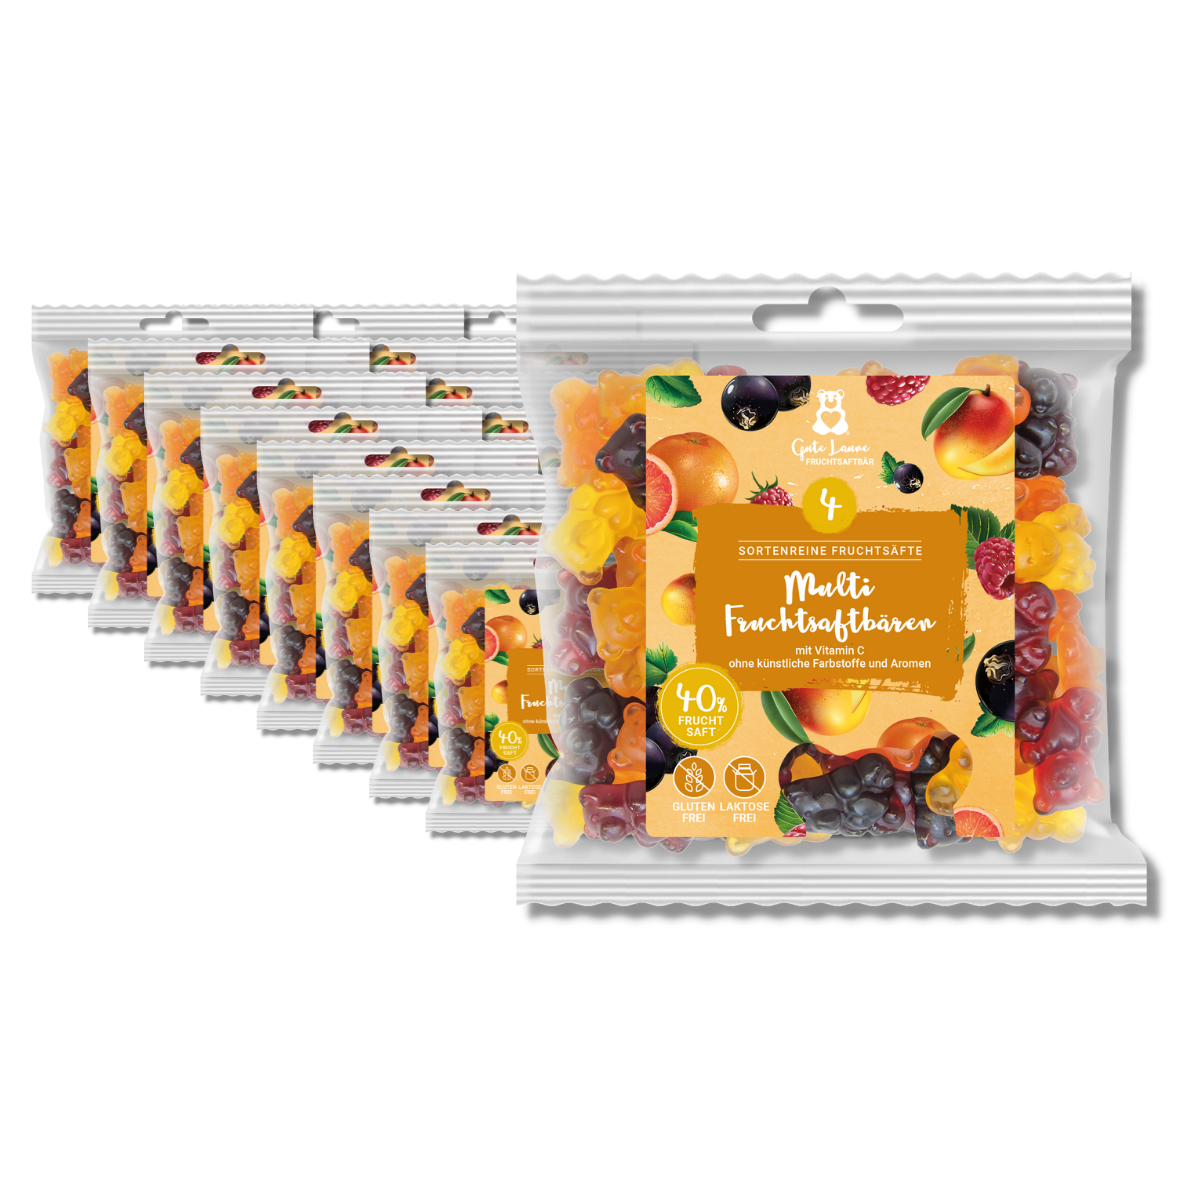 Fruchtgummis Multi Fruchtsaftbären - Großverpackung (VE mit 23 x 150g Tüten)